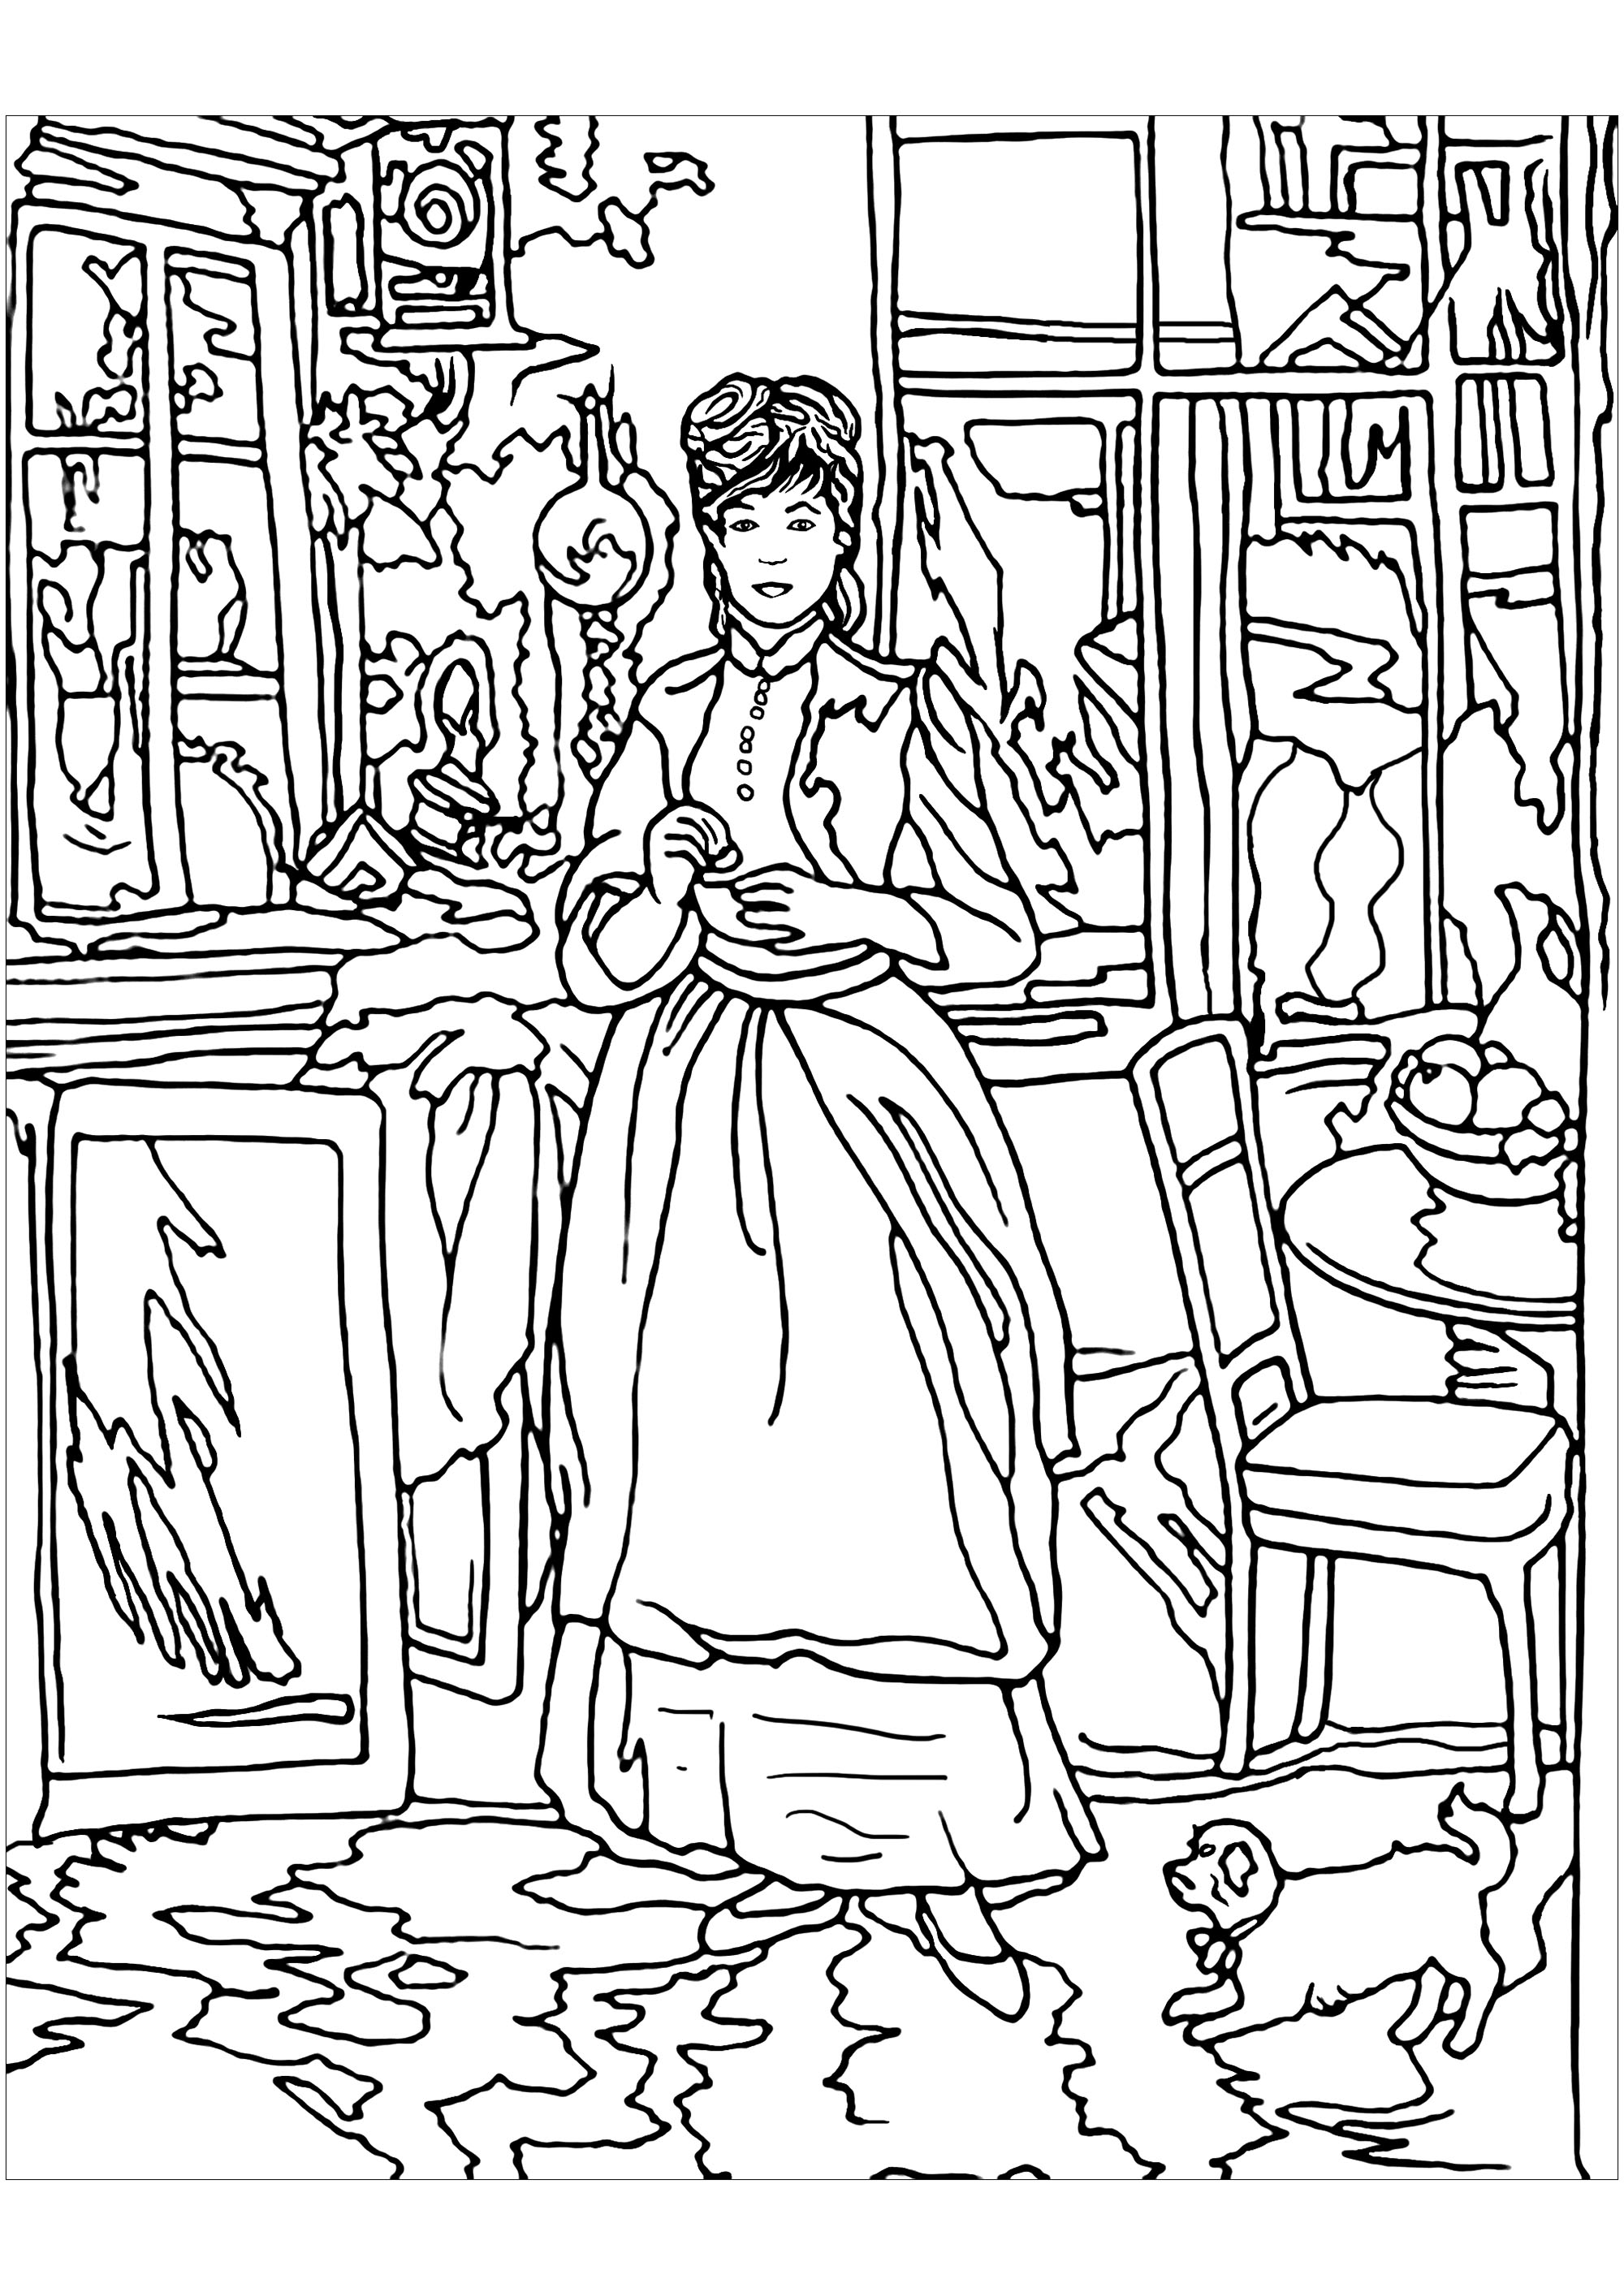 Página para colorir inspirada numa obra da pintora impressionista Berthe Morisot: Na sala de jantar. As pinturas de Morisot revelam aspectos da vida feminina no final do século XIX, mesmo momentos privados e íntimos geralmente vedados aos homens, Artista : Art'Isabelle